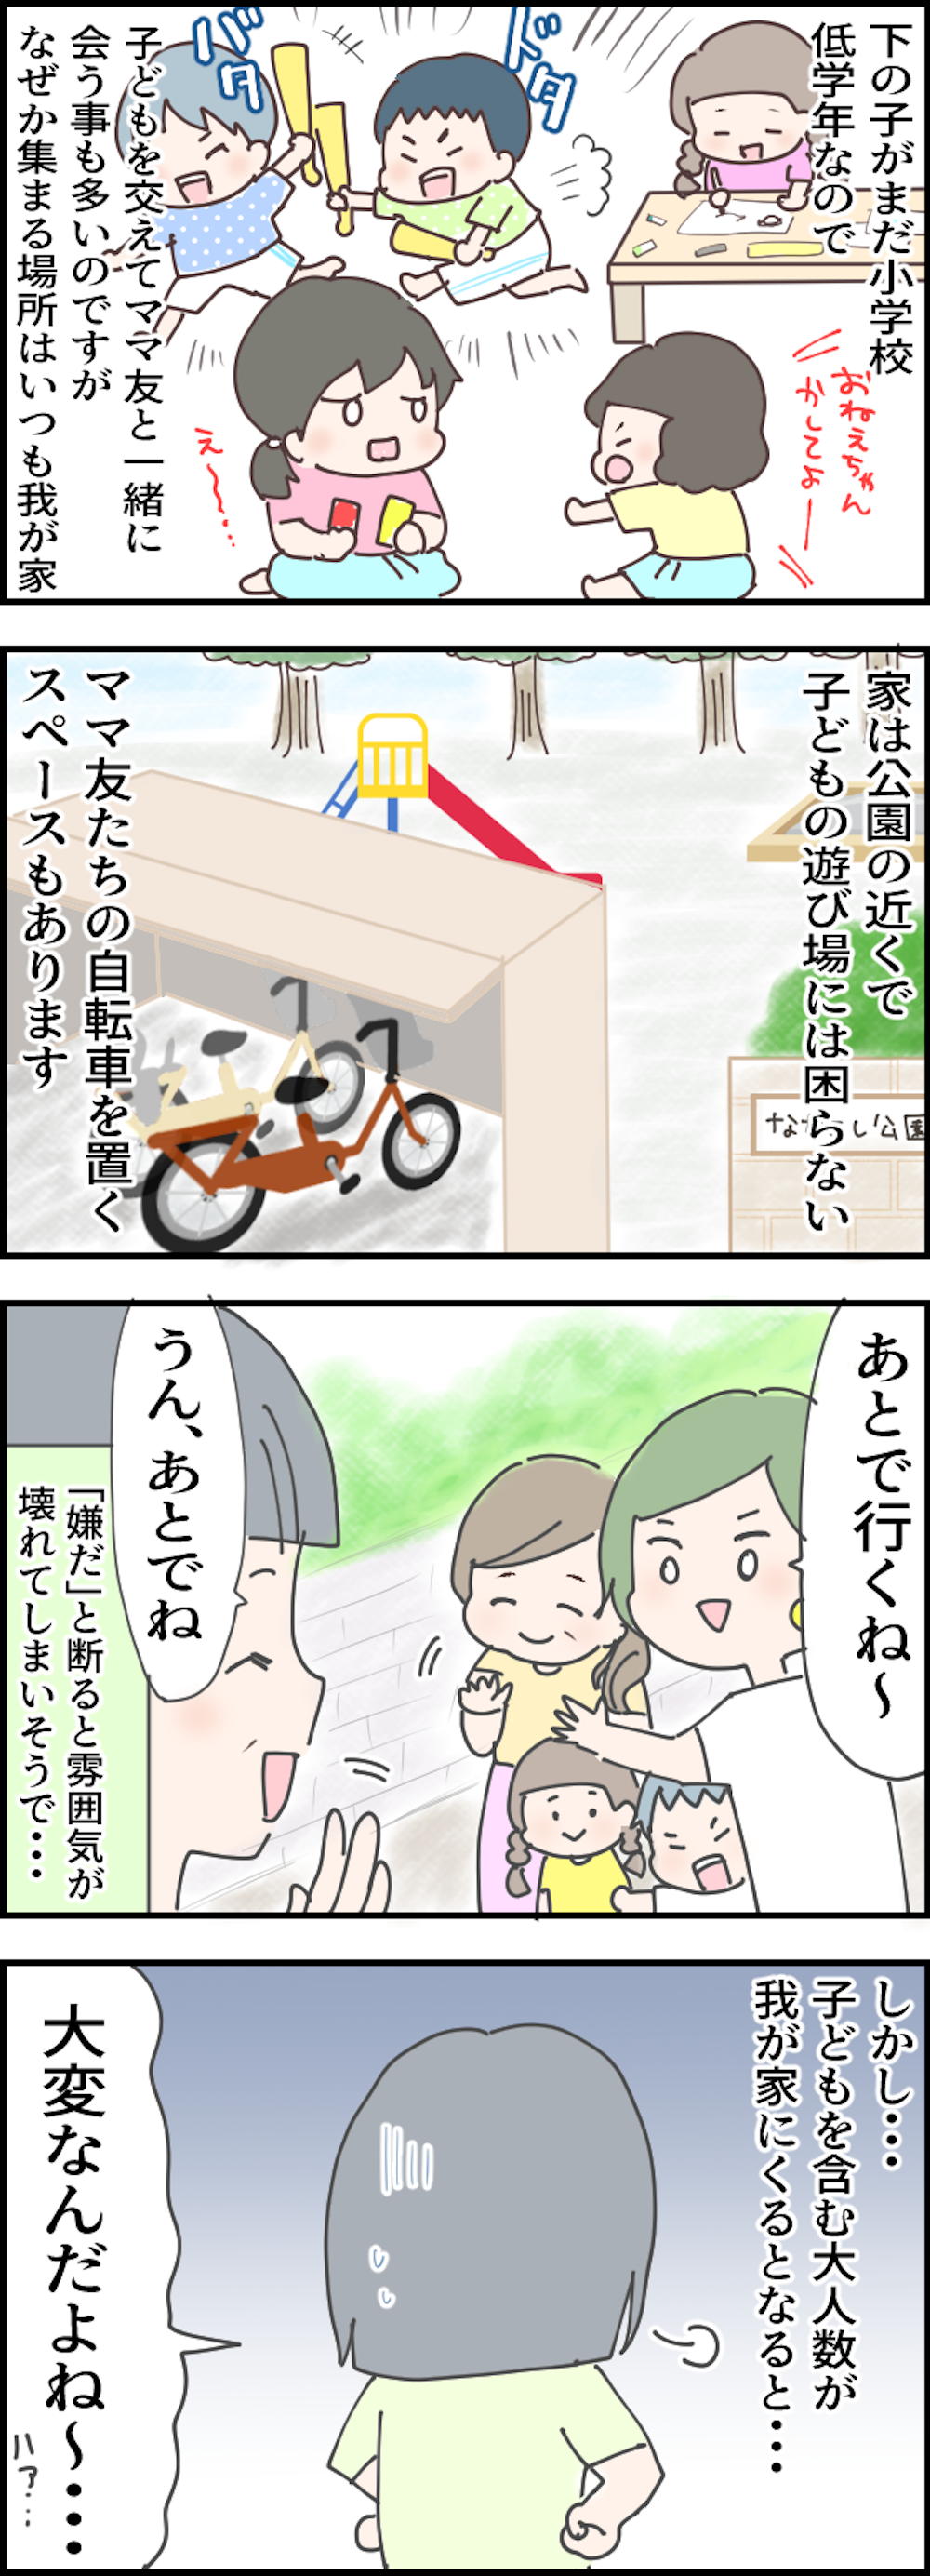 【漫画】我が家がママ友たちの「たまり場」に...。確かに公園に近いし自転車も置けるけどモヤモヤする！ 7-2.png